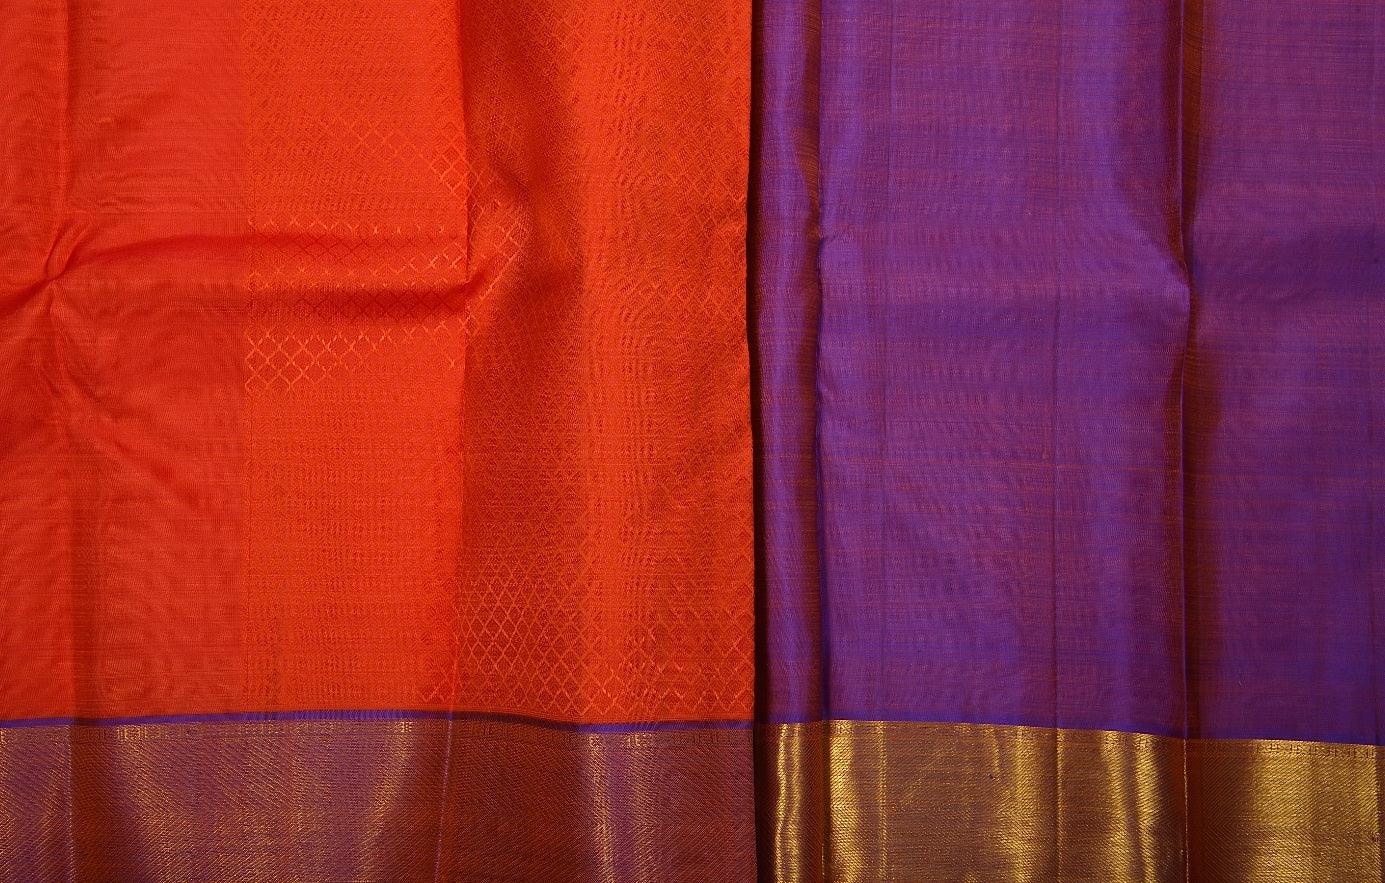 PVD-128 Panjavarnam Kanjivaram Silk Saree - Silk Sari - Panjavarnam